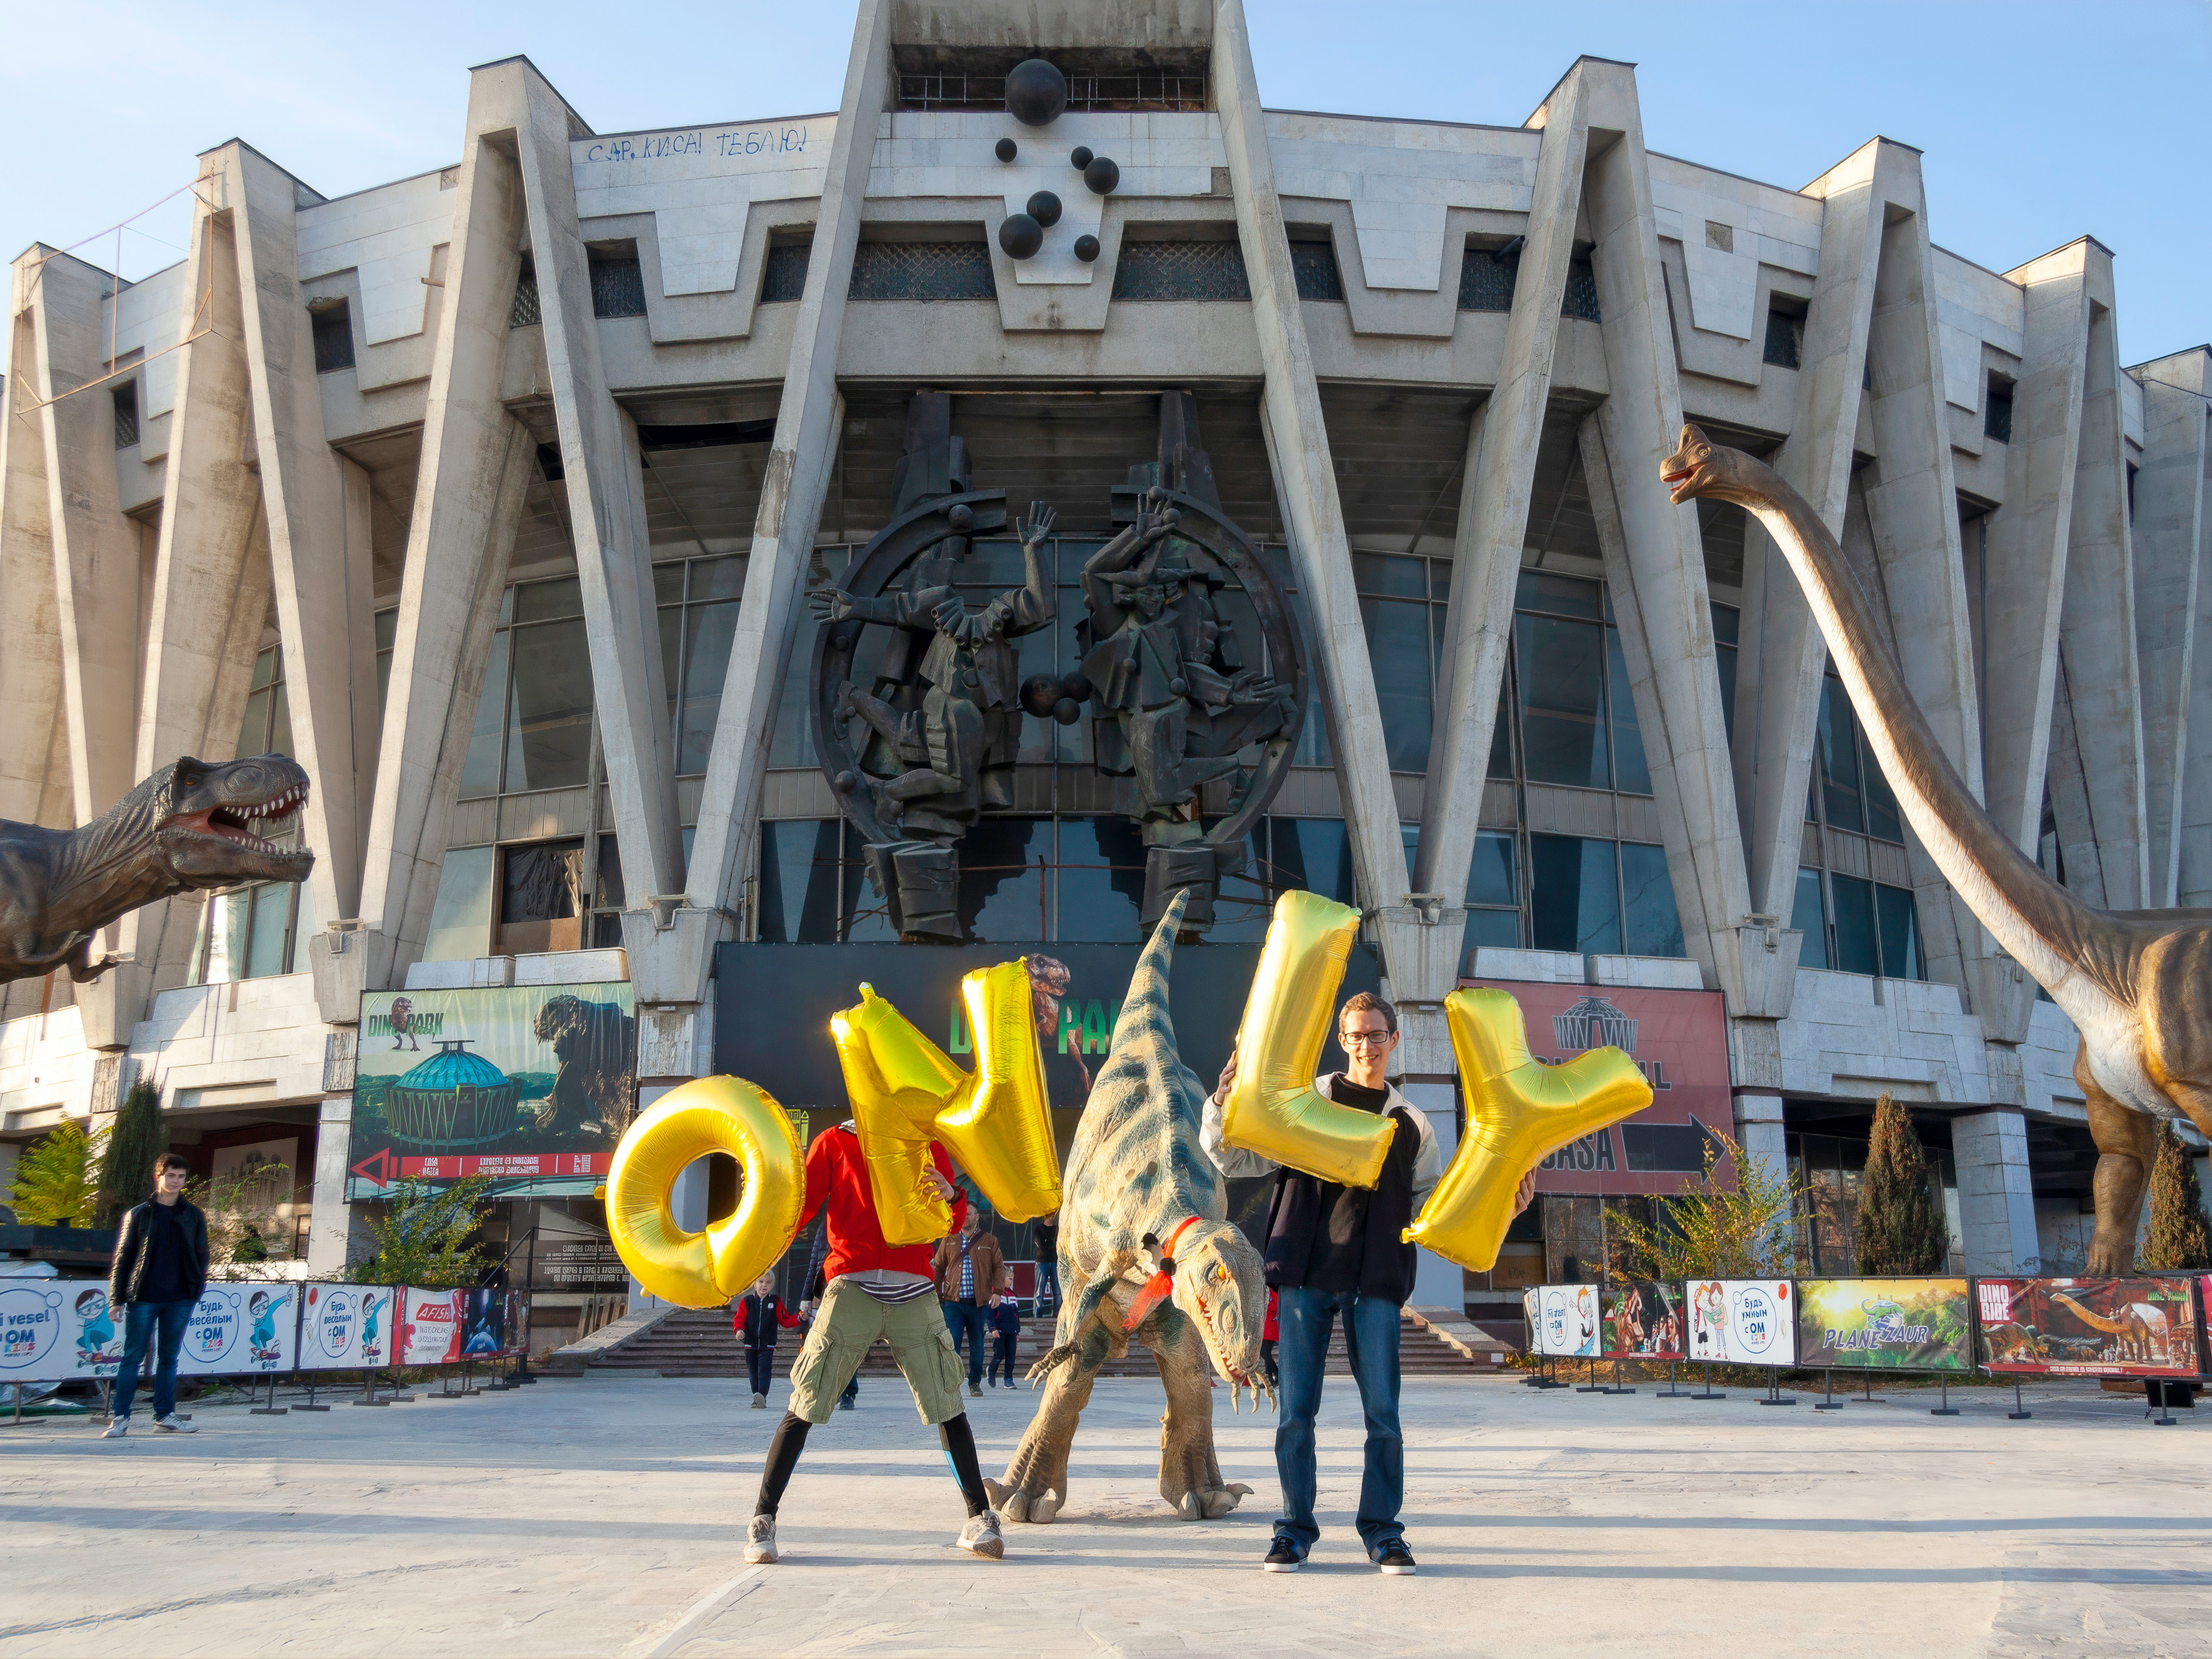 Moldova, Chisinau, Chișinău State Circus (Circul de Stat din Chișinău) - Only, Silence Was Golden, gold balloons